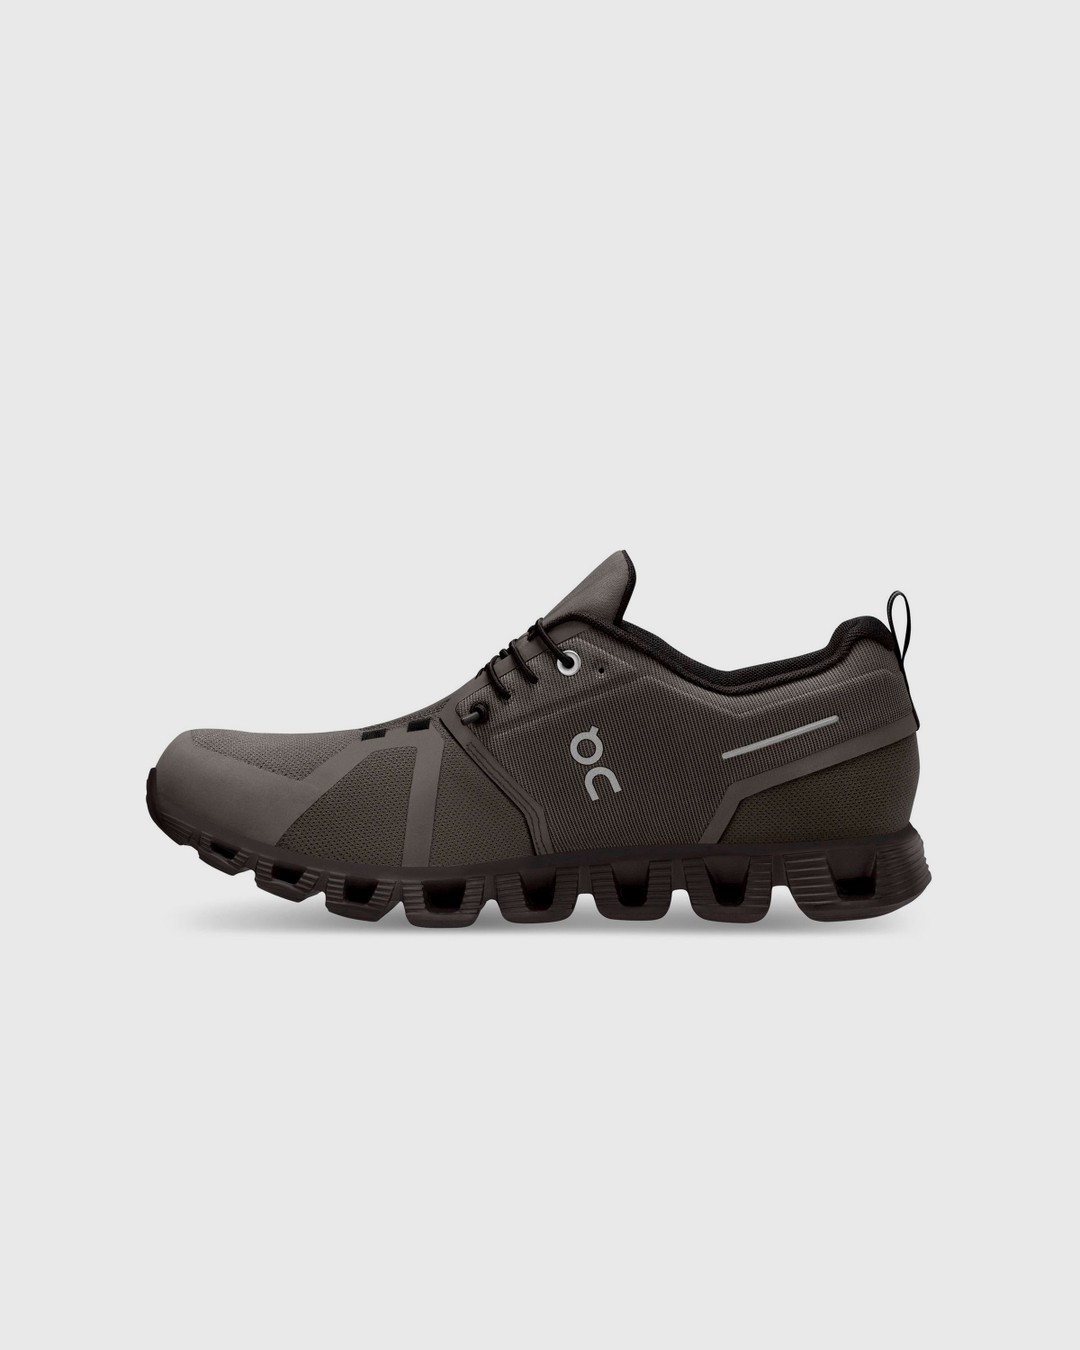 On – Cloud 5 Waterproof Olive/Black - Low Top Sneakers - Green - Image 2